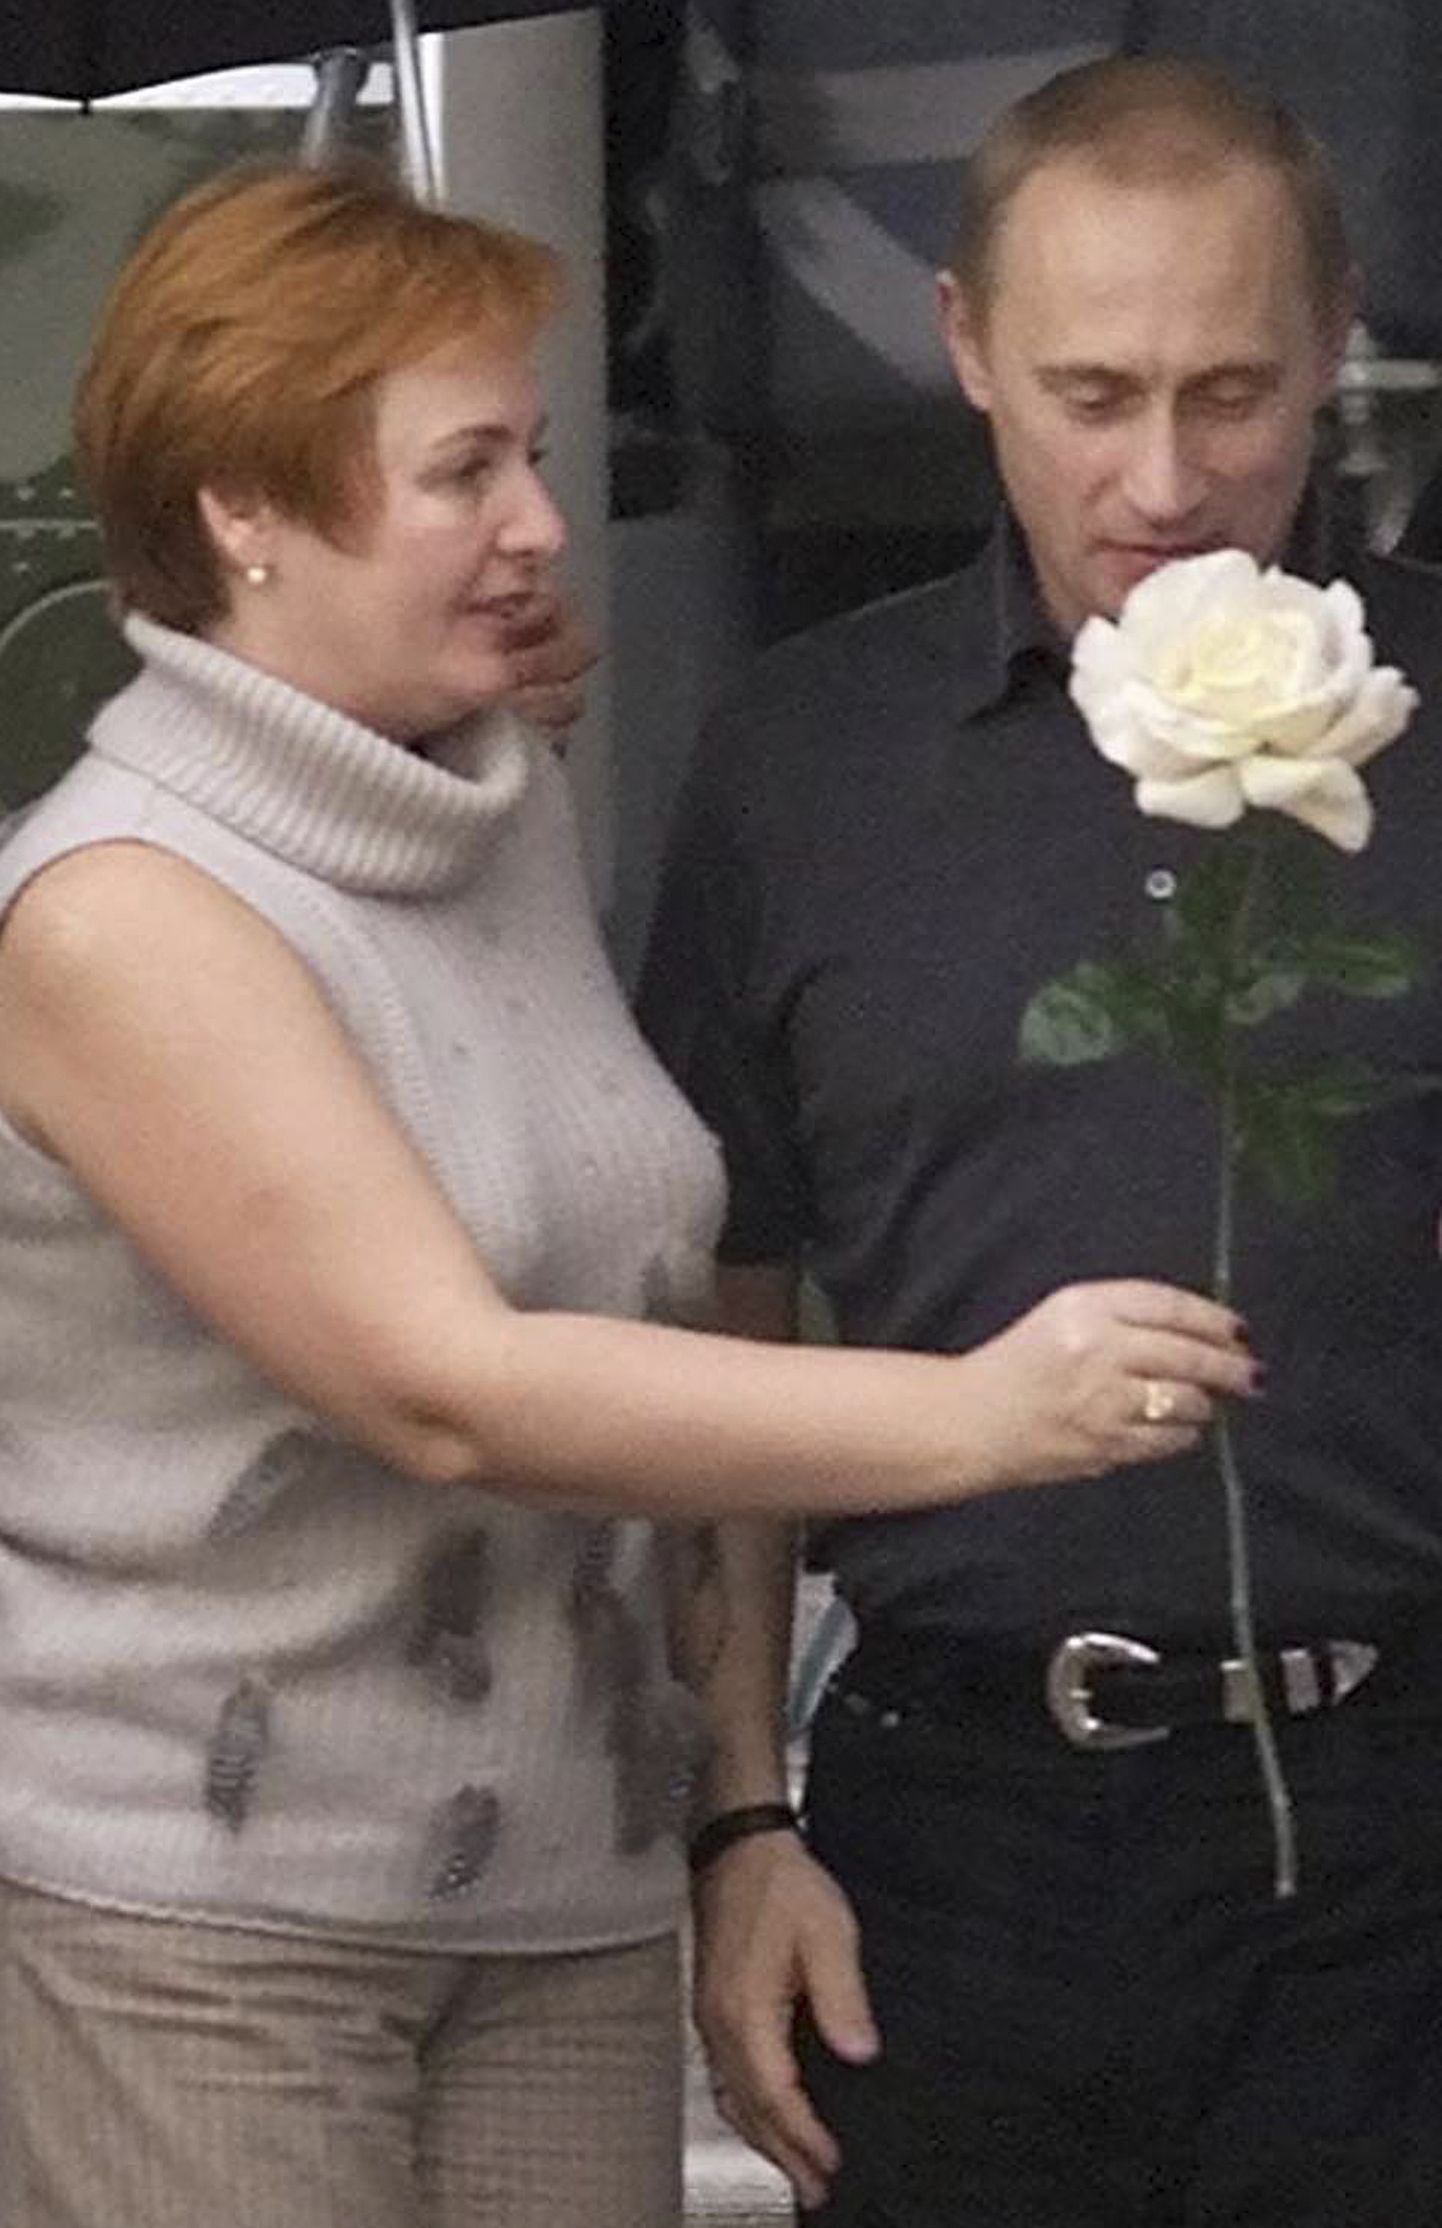 Владимир Путин с женой Людмилой